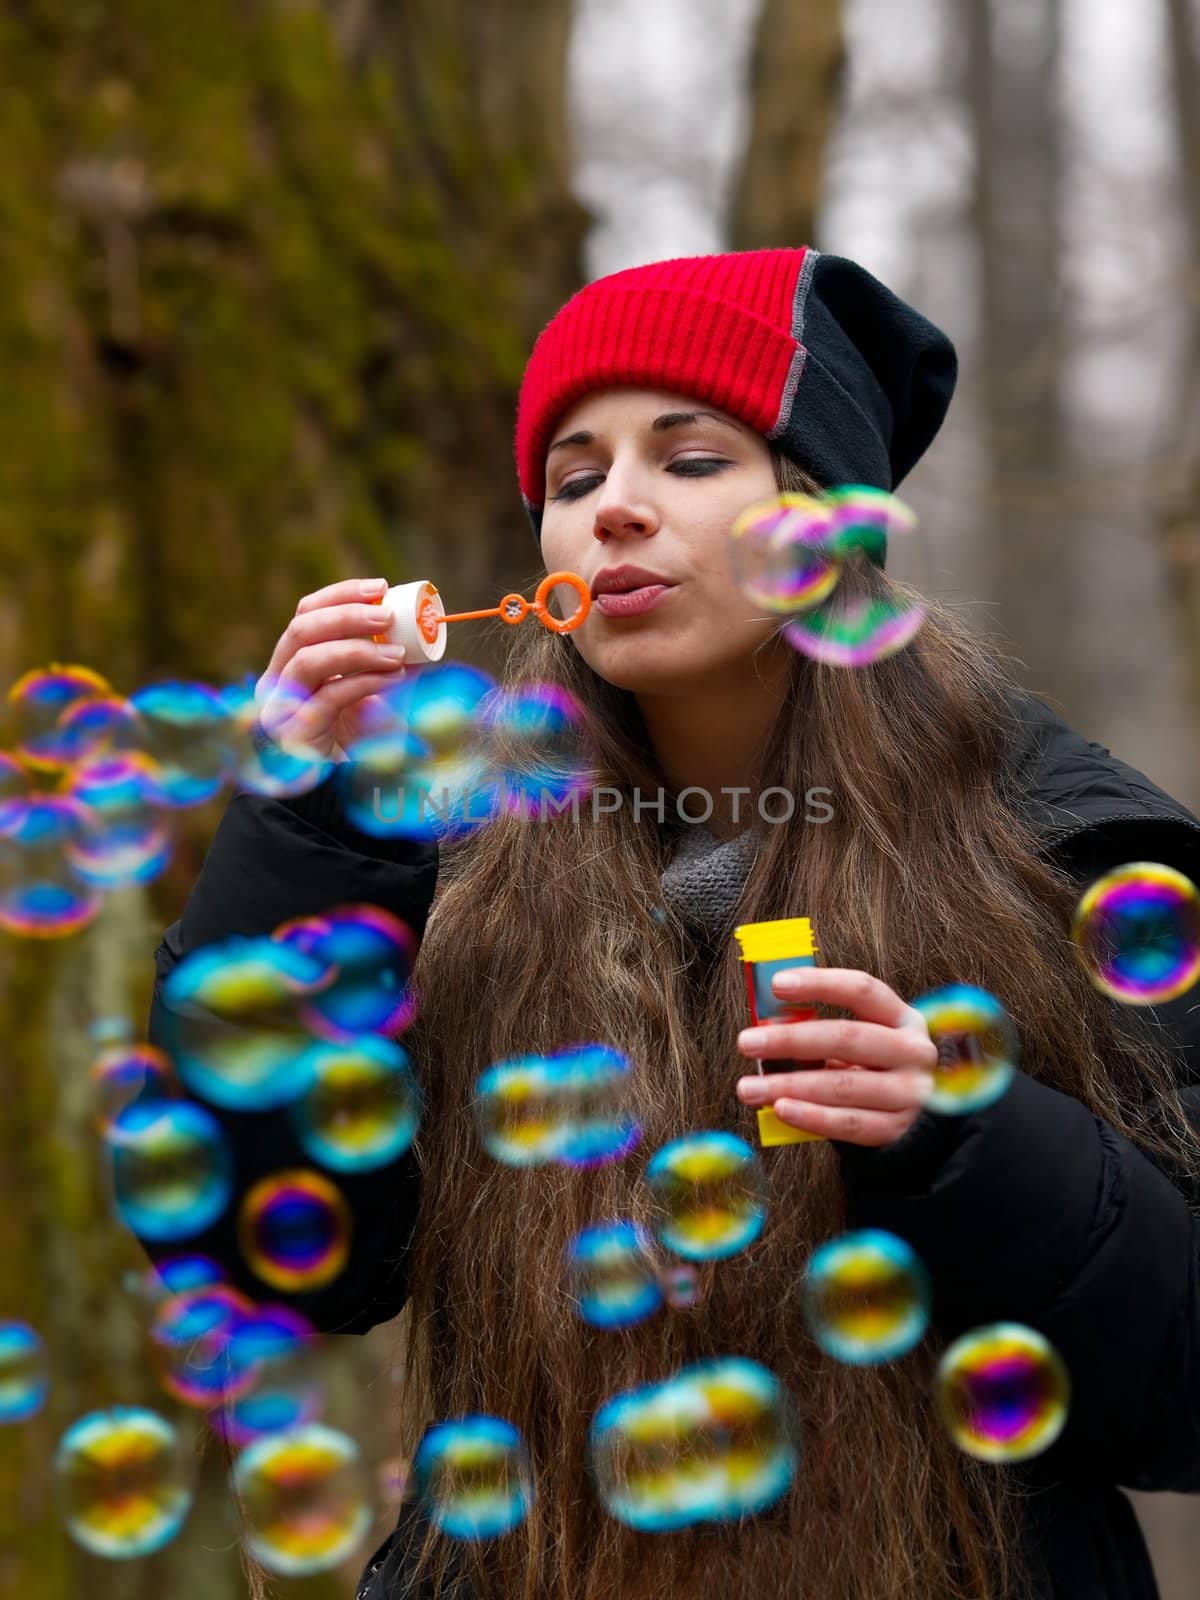 Bubbles by Gudella